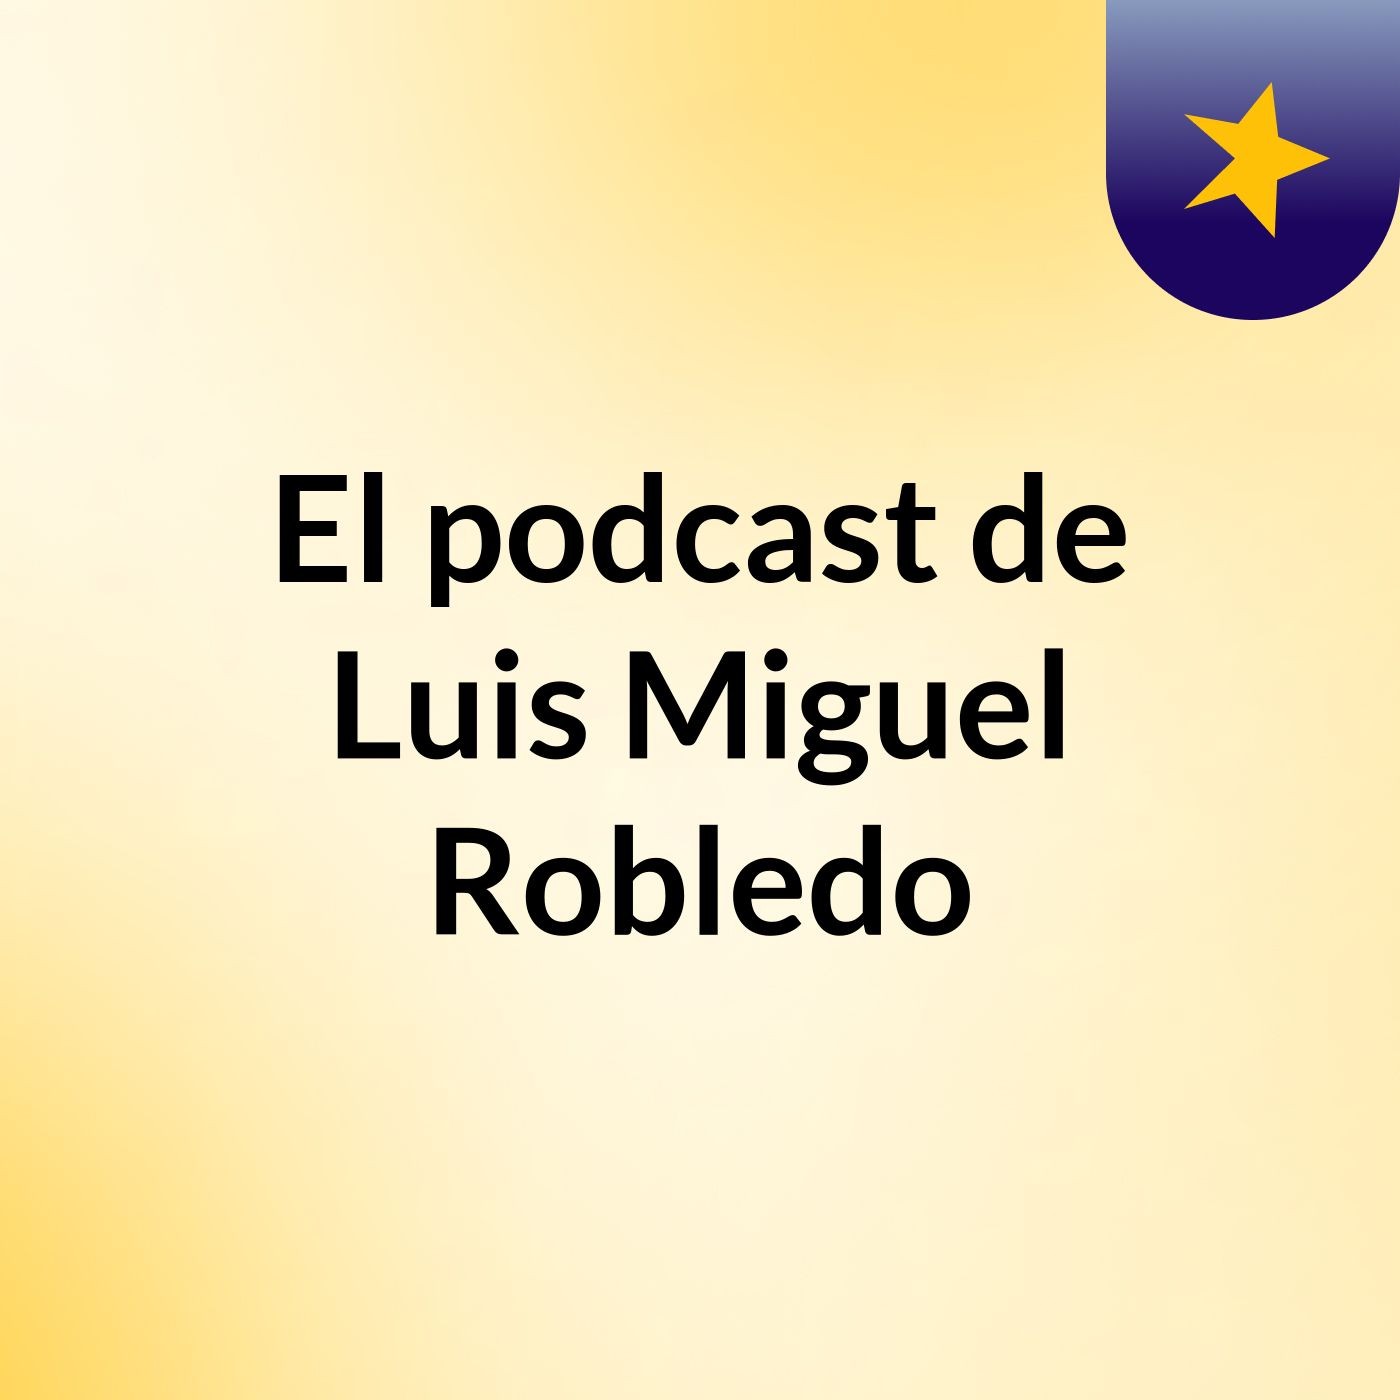 El podcast de Luis Miguel Robledo